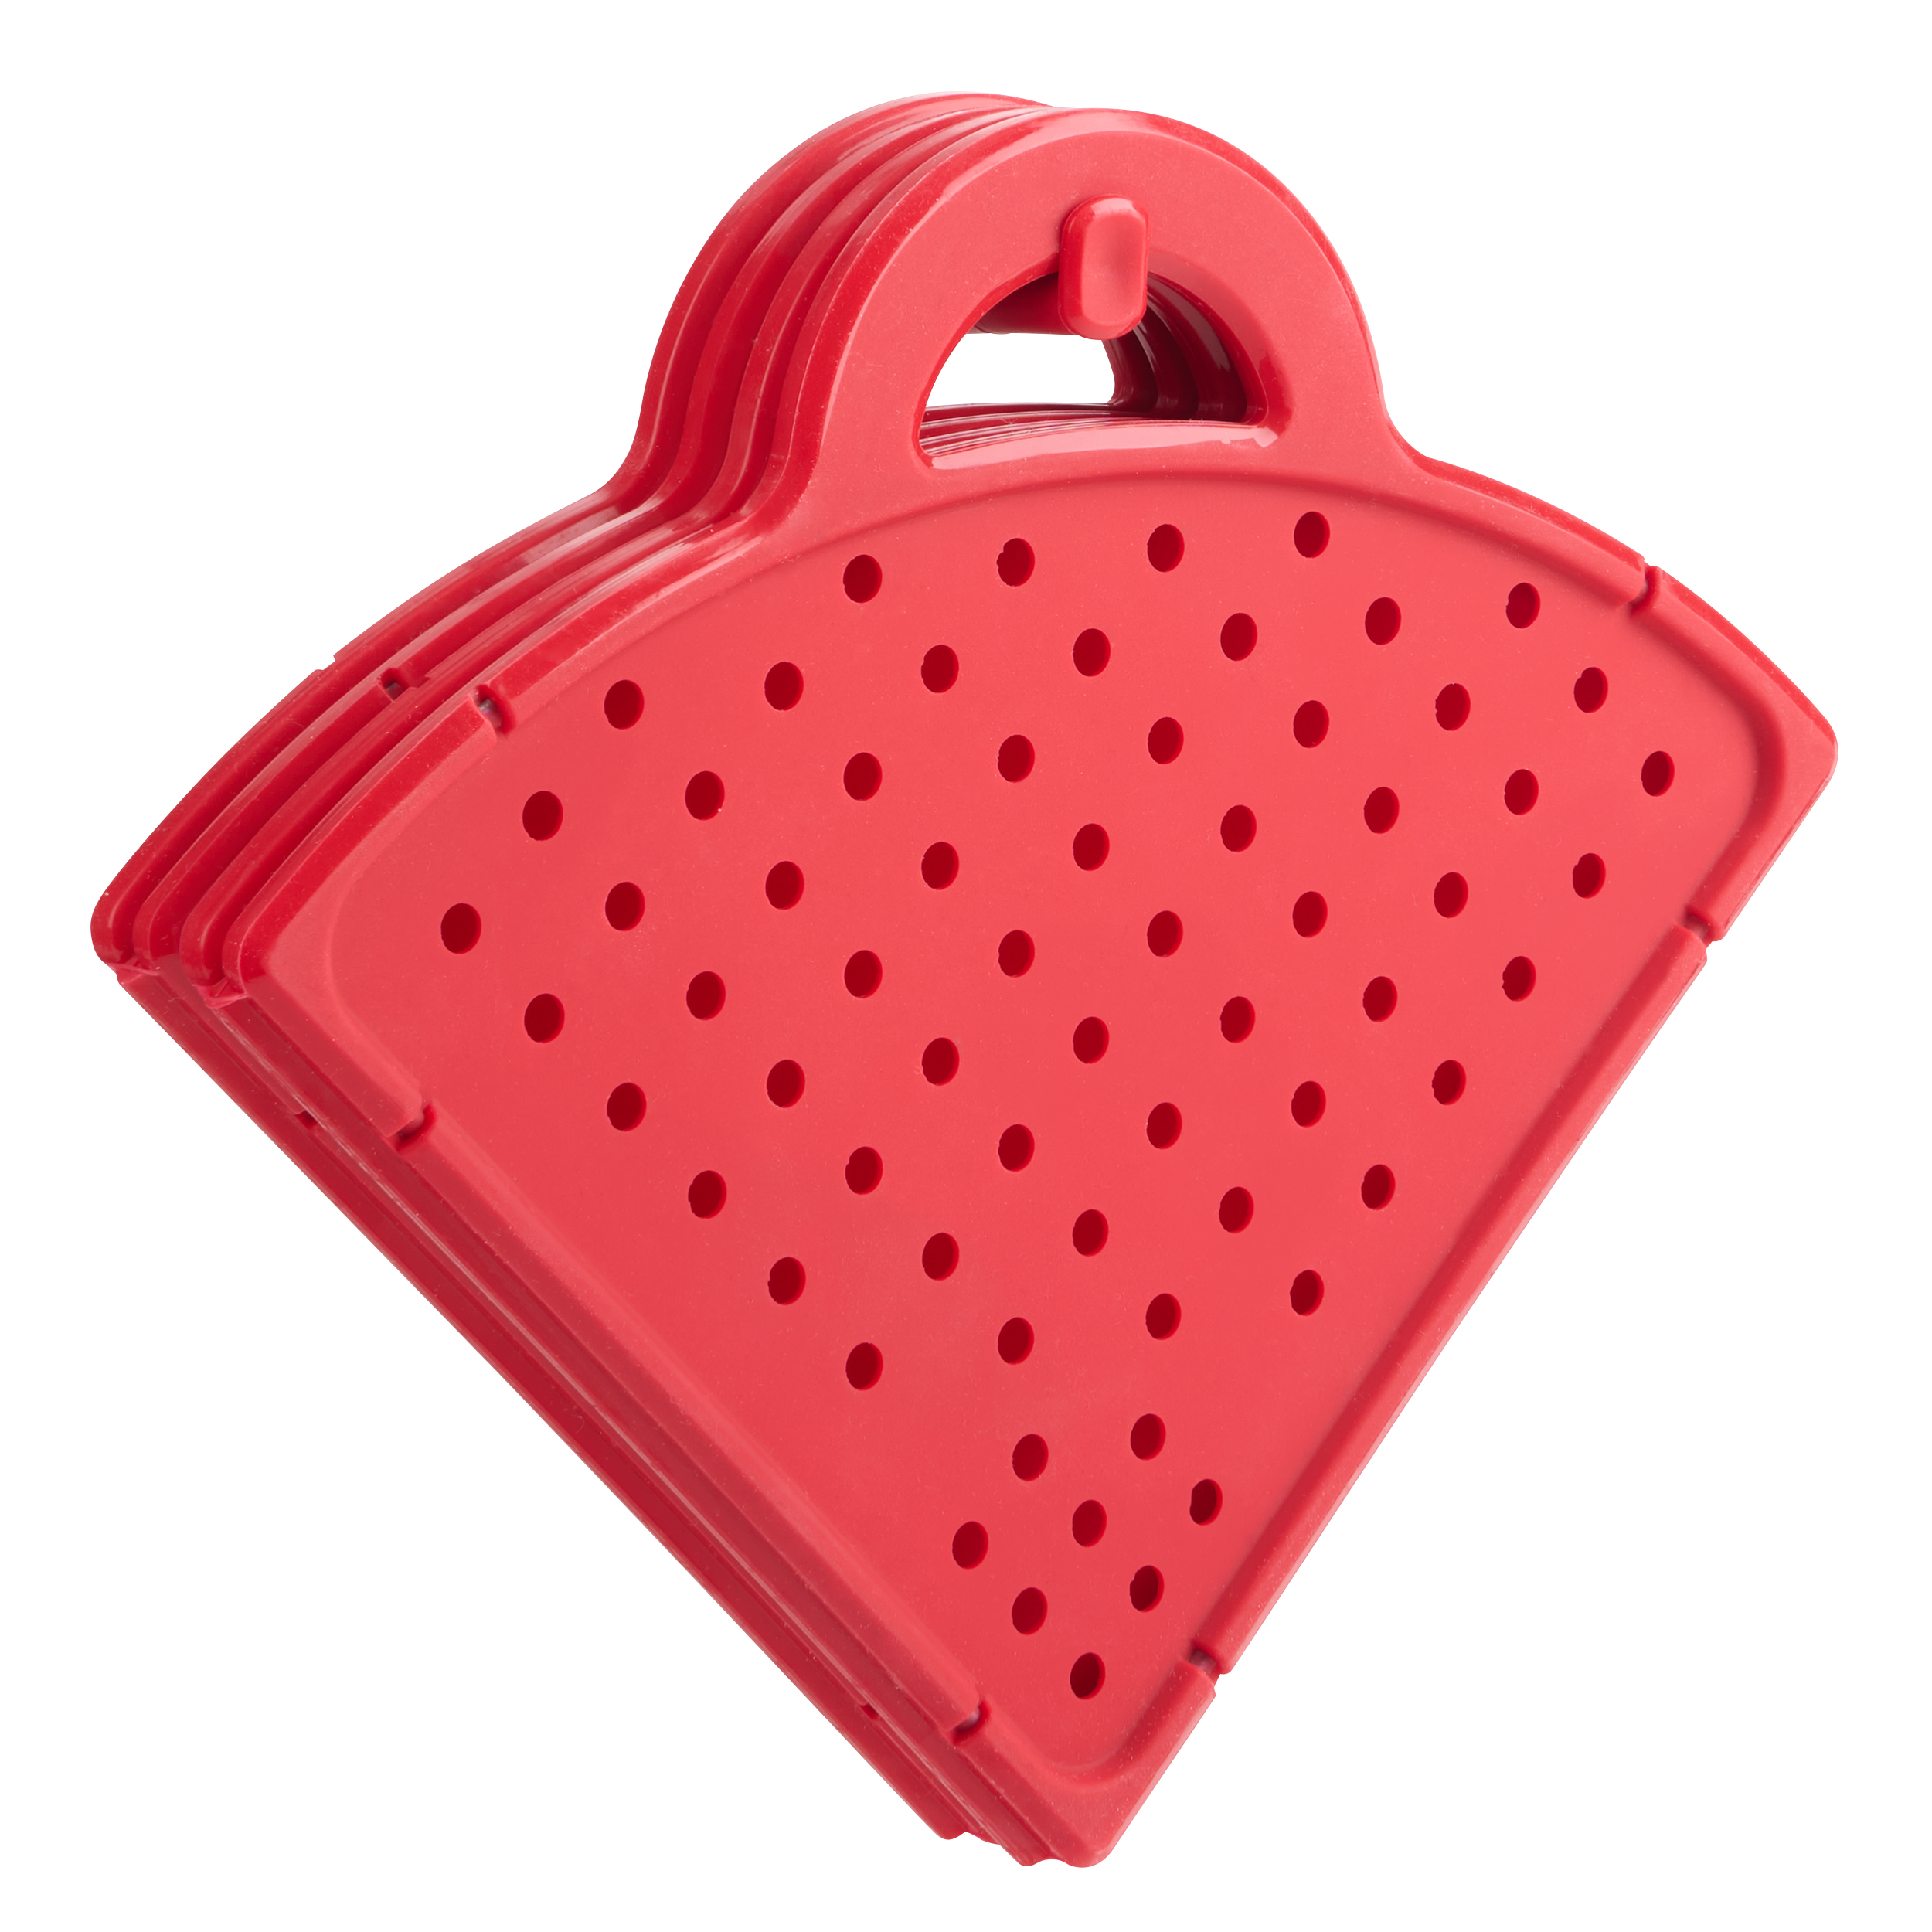 Handy Gourmet Eco-Collap Splatter Shield JB8448TEL 